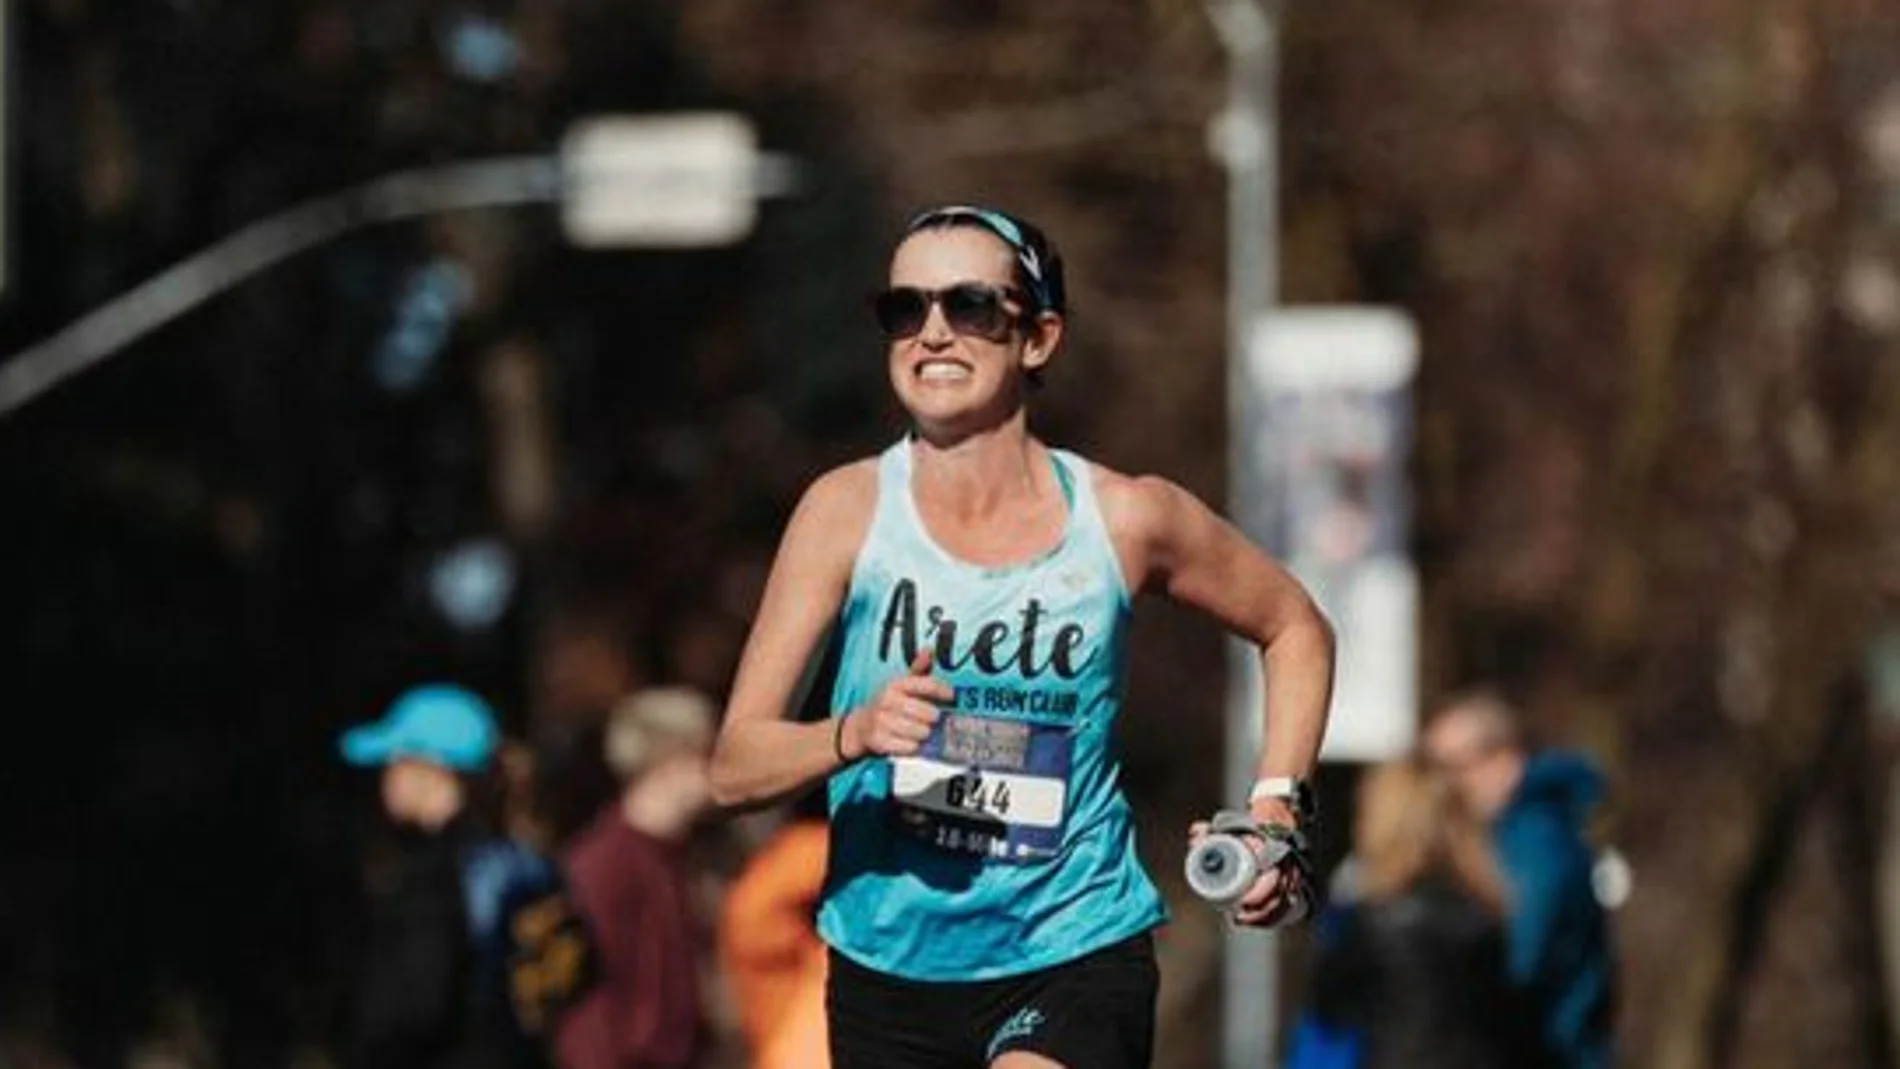  Tamara Torlakson corriendo en una maratón